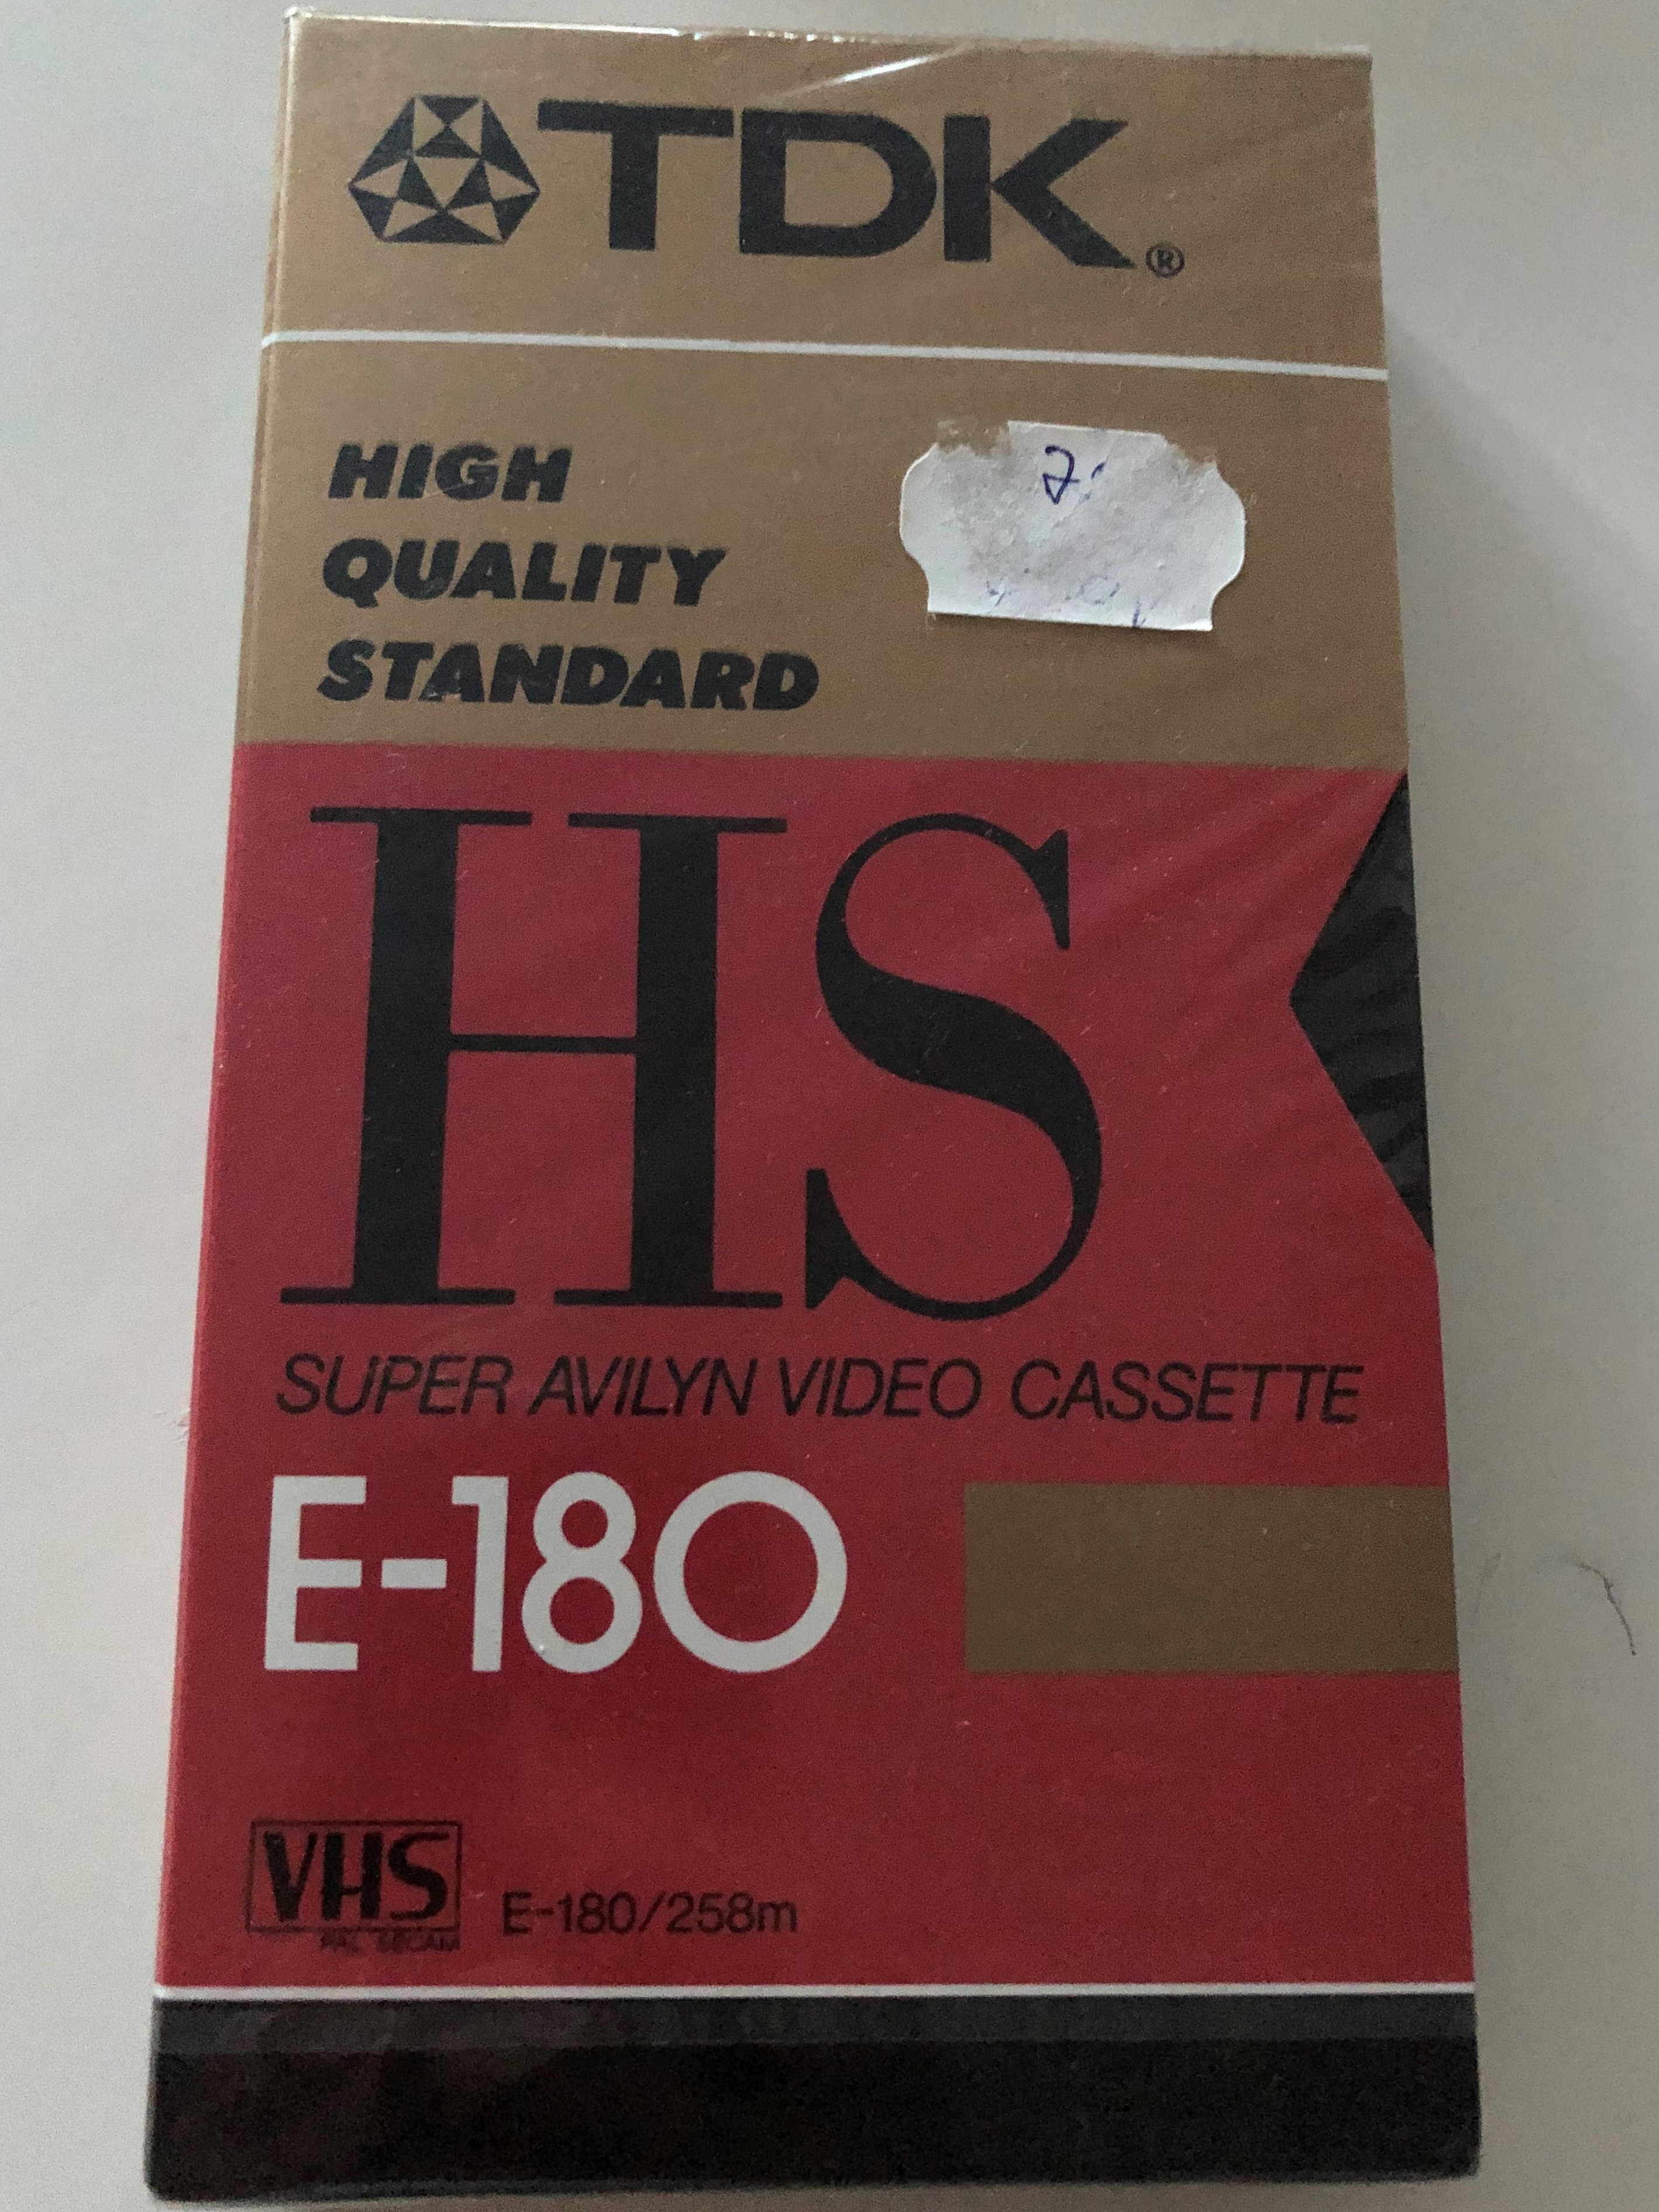 tdk-e-180hs-high-quality-standard-vhs-casette-1.jpg